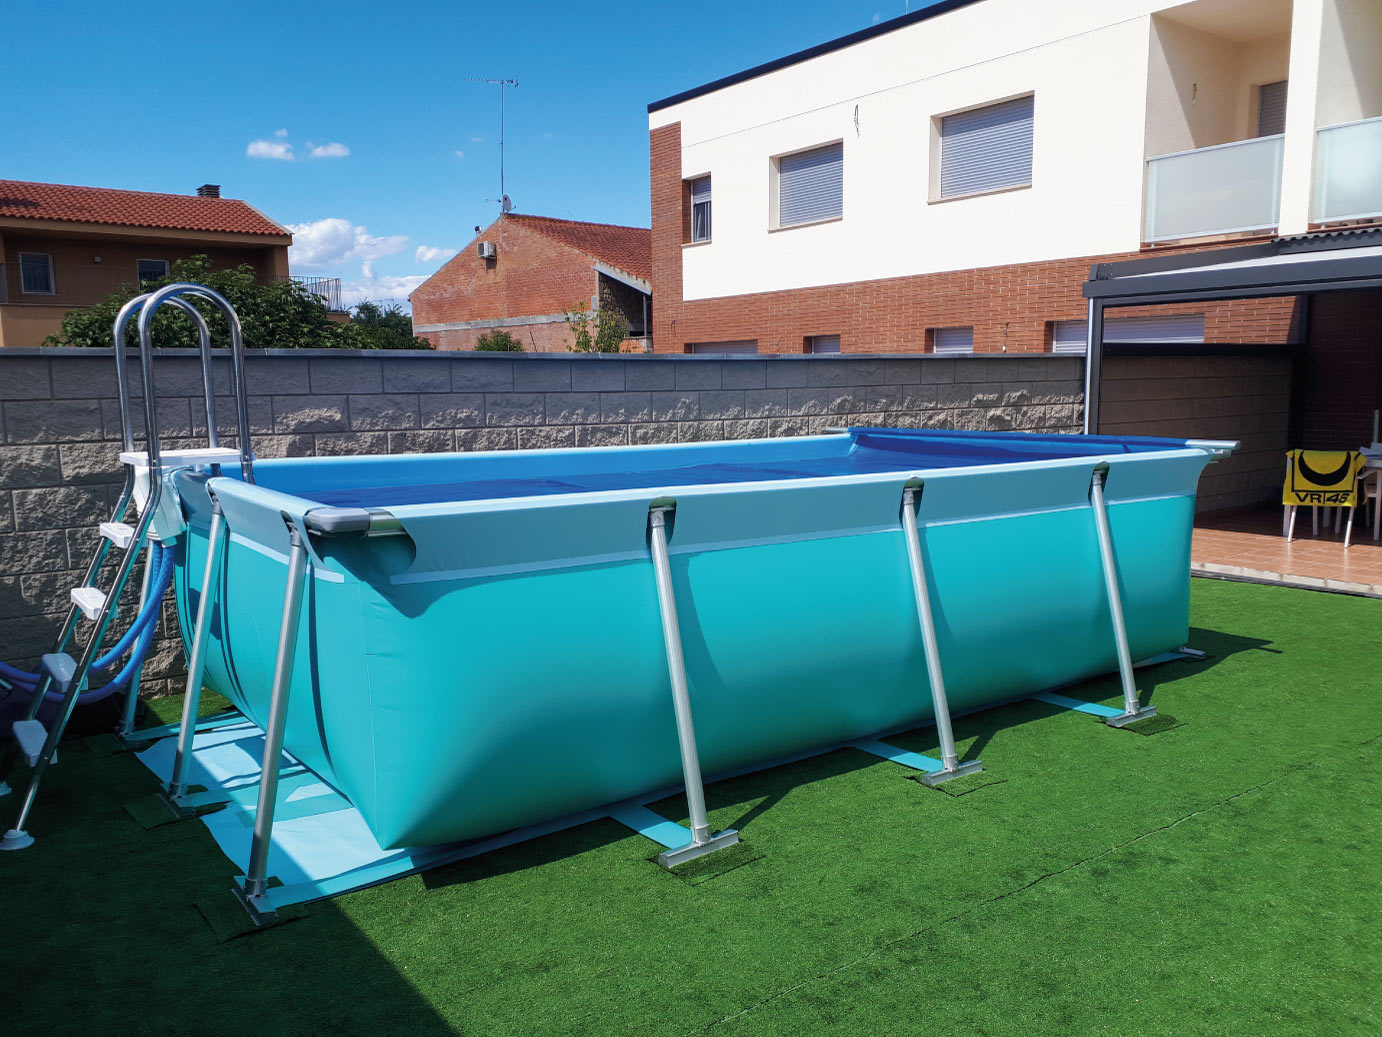 Este verano será diferente: coloca esta piscina desmontable en tu jardín ¡y  ahorra más de 400€!